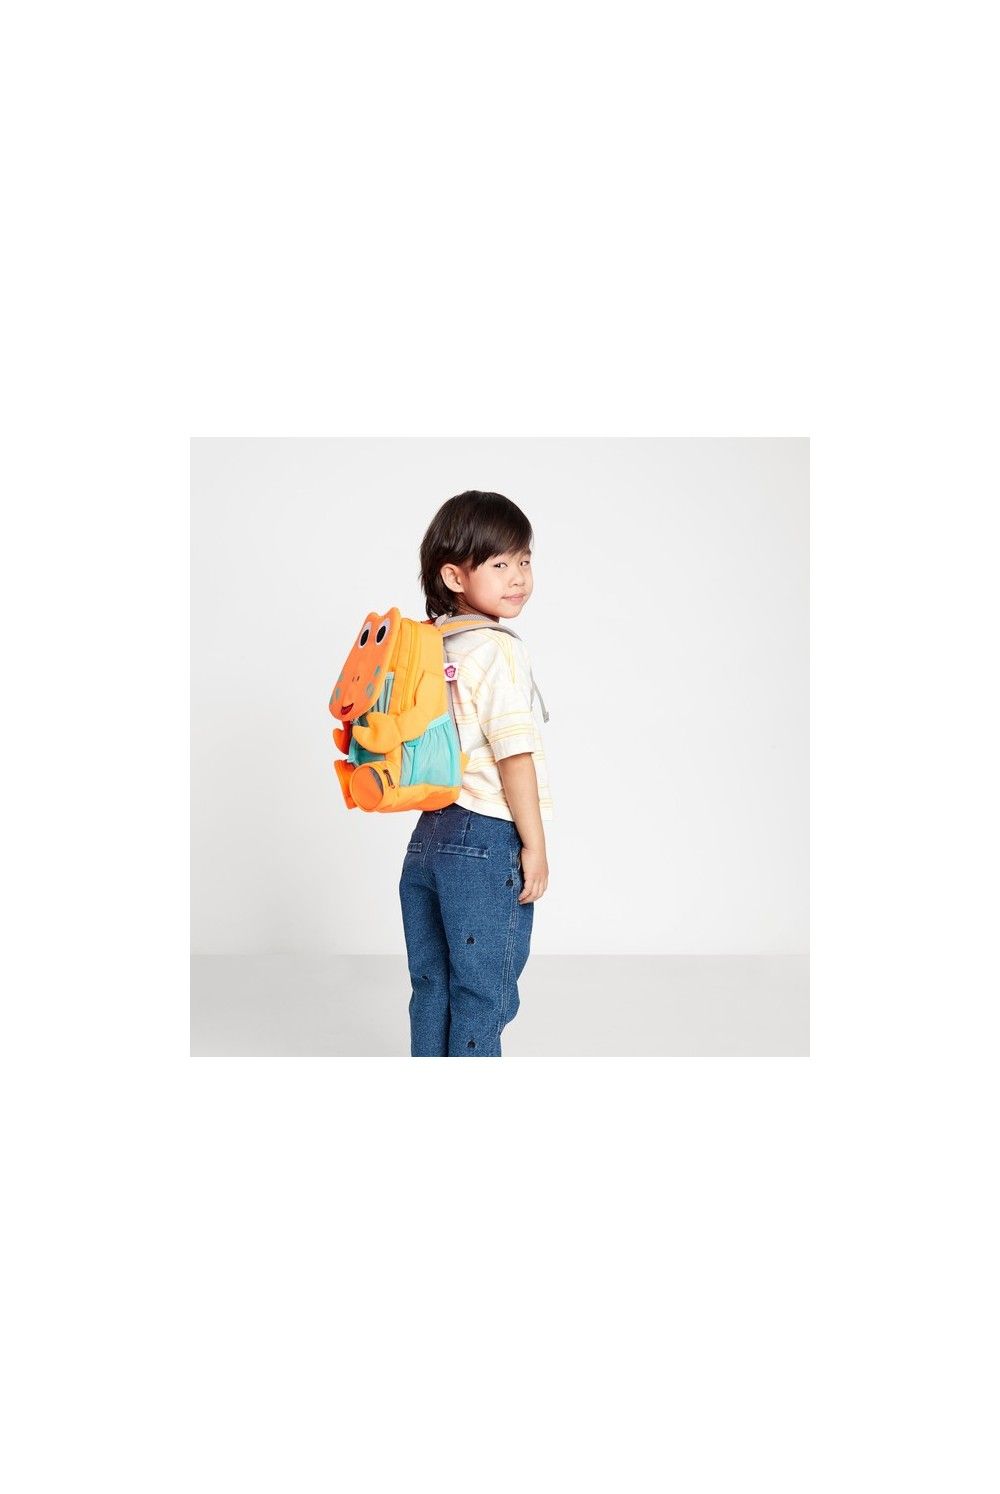 Children backpack Affenzahn big friend NEON Krabbe